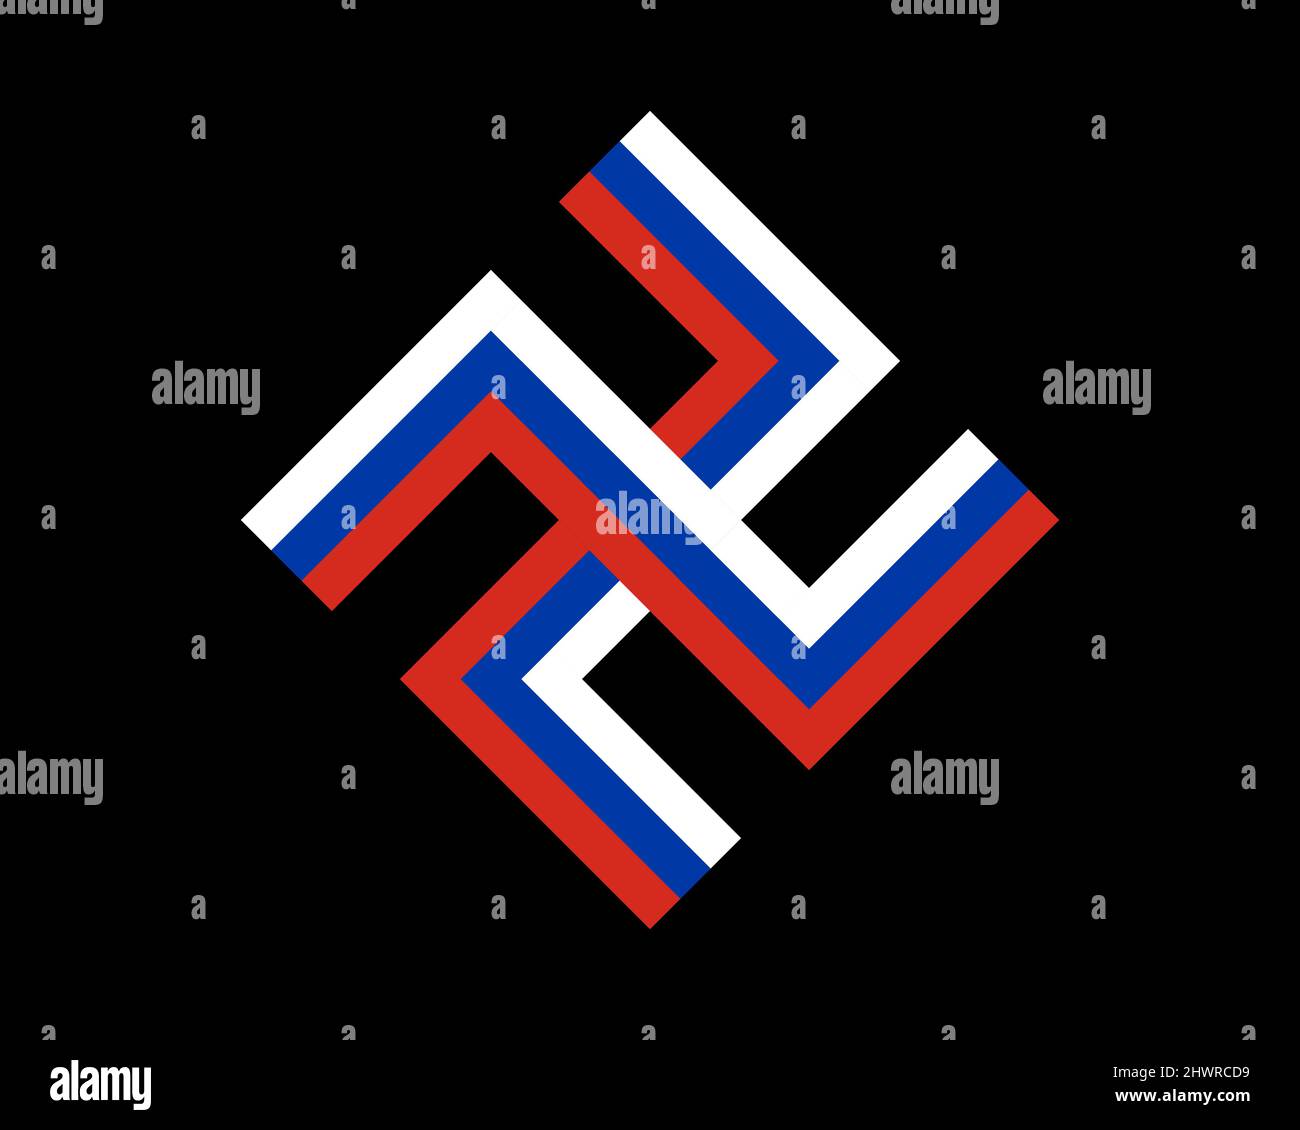 Russischer nazismus und Faschismus - durchgestrichene flagge der russischen Föderation in Form von Hakenkreuz. Kreuzzeichen - Trikolor Russlands, das das Land des Occus symbolisiert Stock Vektor